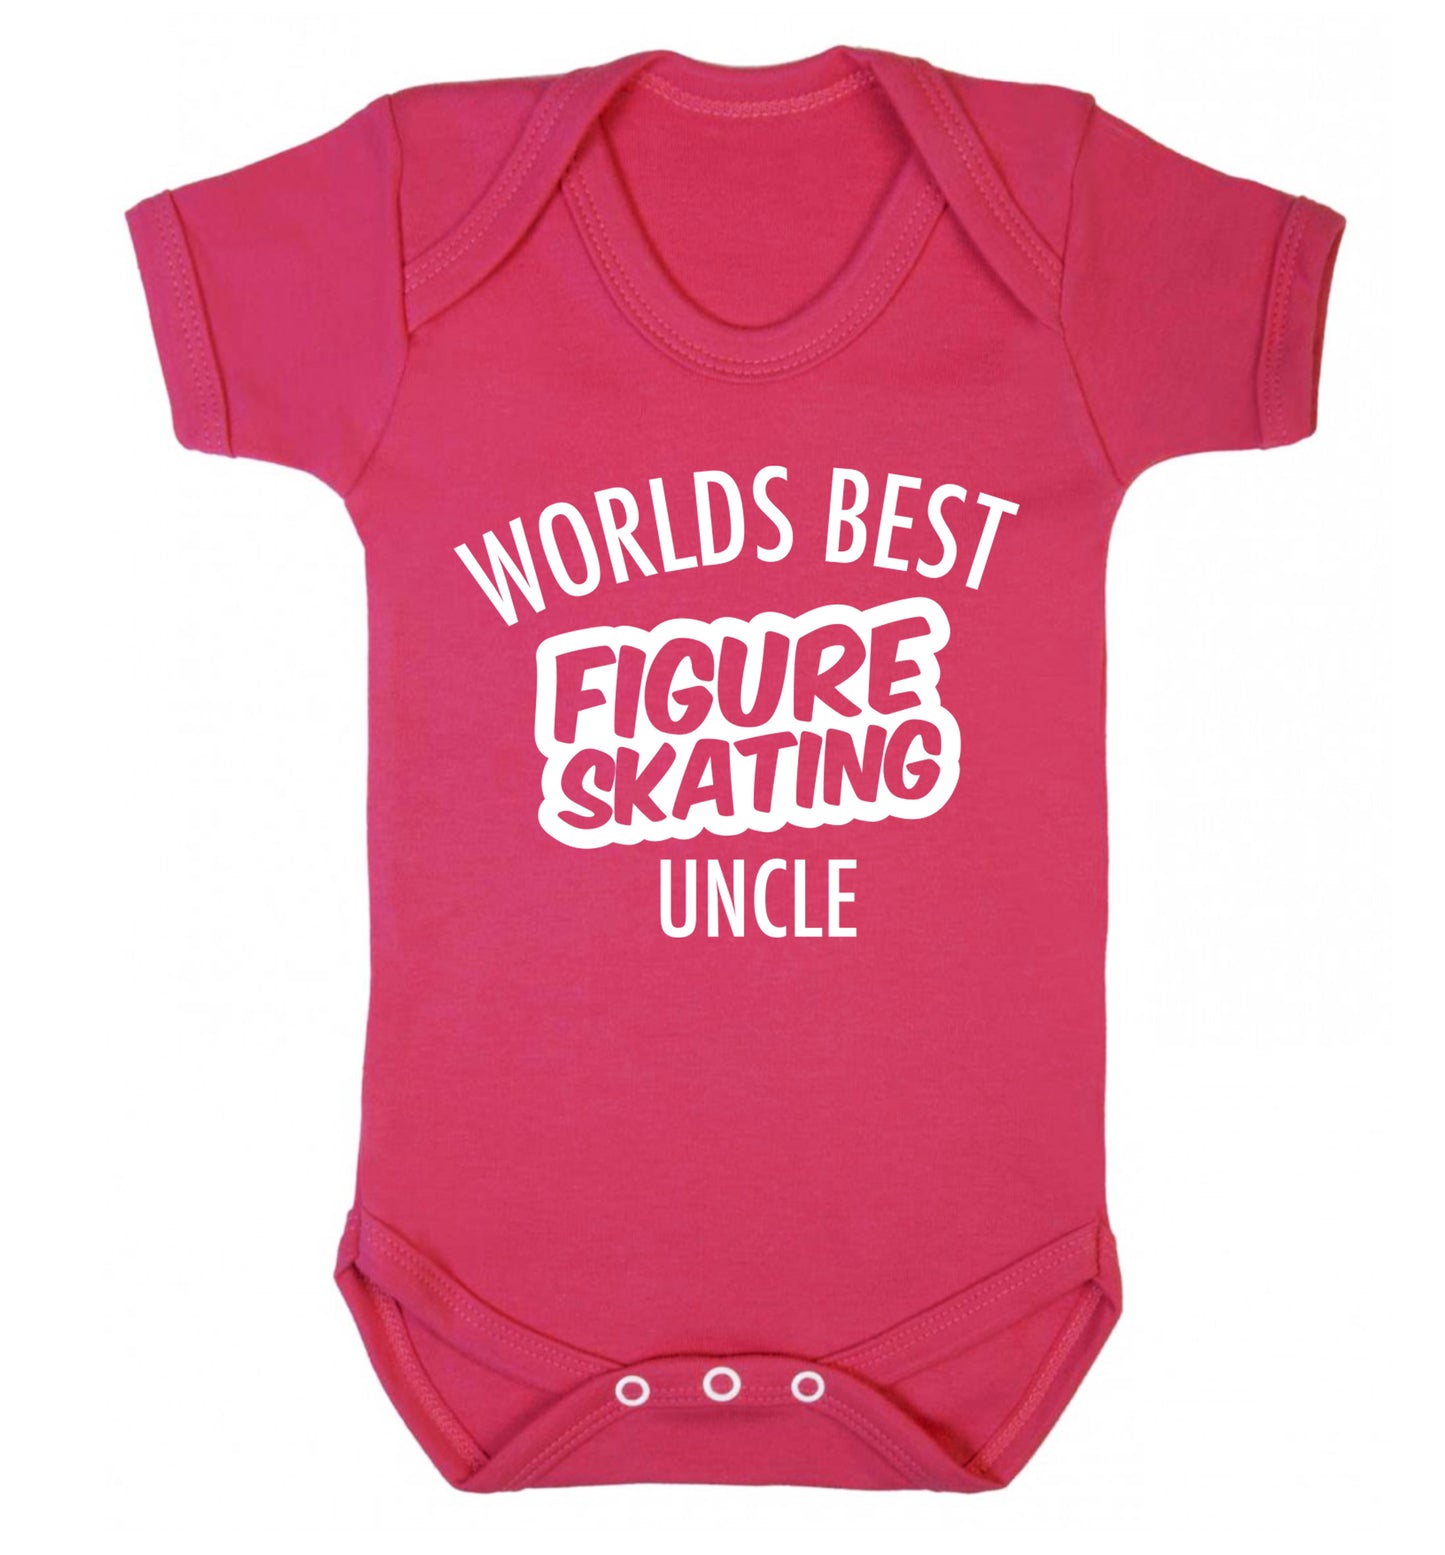 Worlds best figure skating uncle Baby Vest dark pink 18-24 months